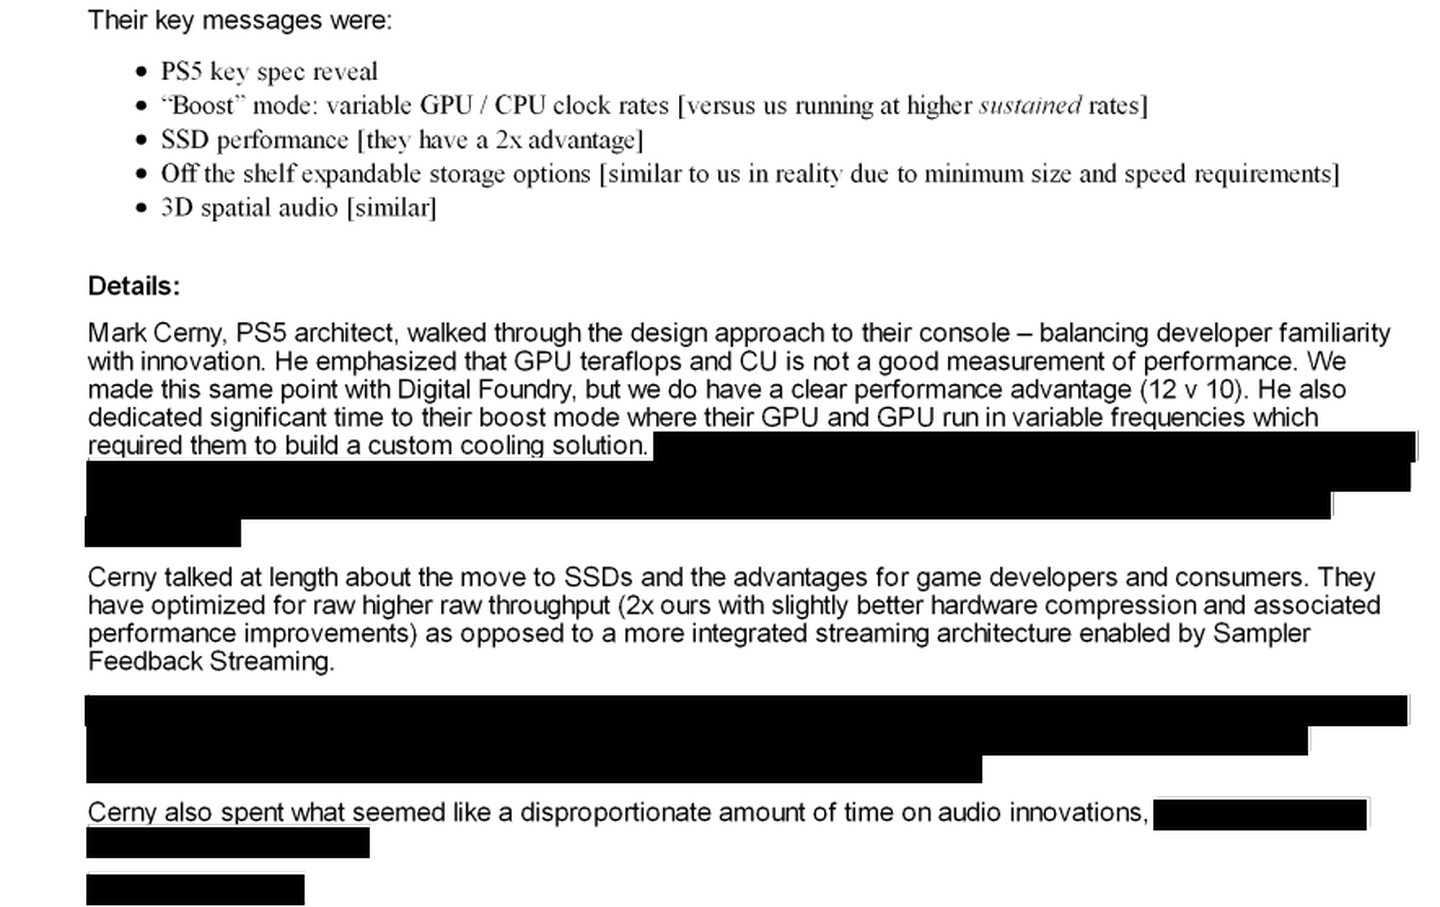 Un correo electrónico que muestra la reacción de Microsoft a la revelación de las especificaciones de PlayStation 5, incluidos pasajes como "Cerny habló extensamente sobre el paso a los SSD y los beneficios para los desarrolladores y consumidores de juegos.  Optimizaron para obtener un mayor rendimiento sin procesar (el doble del nuestro con una compresión de hardware ligeramente mejor y mejoras de rendimiento asociadas) en lugar de una arquitectura de transmisión más integrada habilitada por Sampler Feedback Streaming." Y "[Cerny]    Señaló que los teraflops de GPU y CU no son una buena medida del rendimiento.  Hicimos lo mismo con Digital Foundry, pero tenemos una clara ventaja en rendimiento (12 frente a 10)."